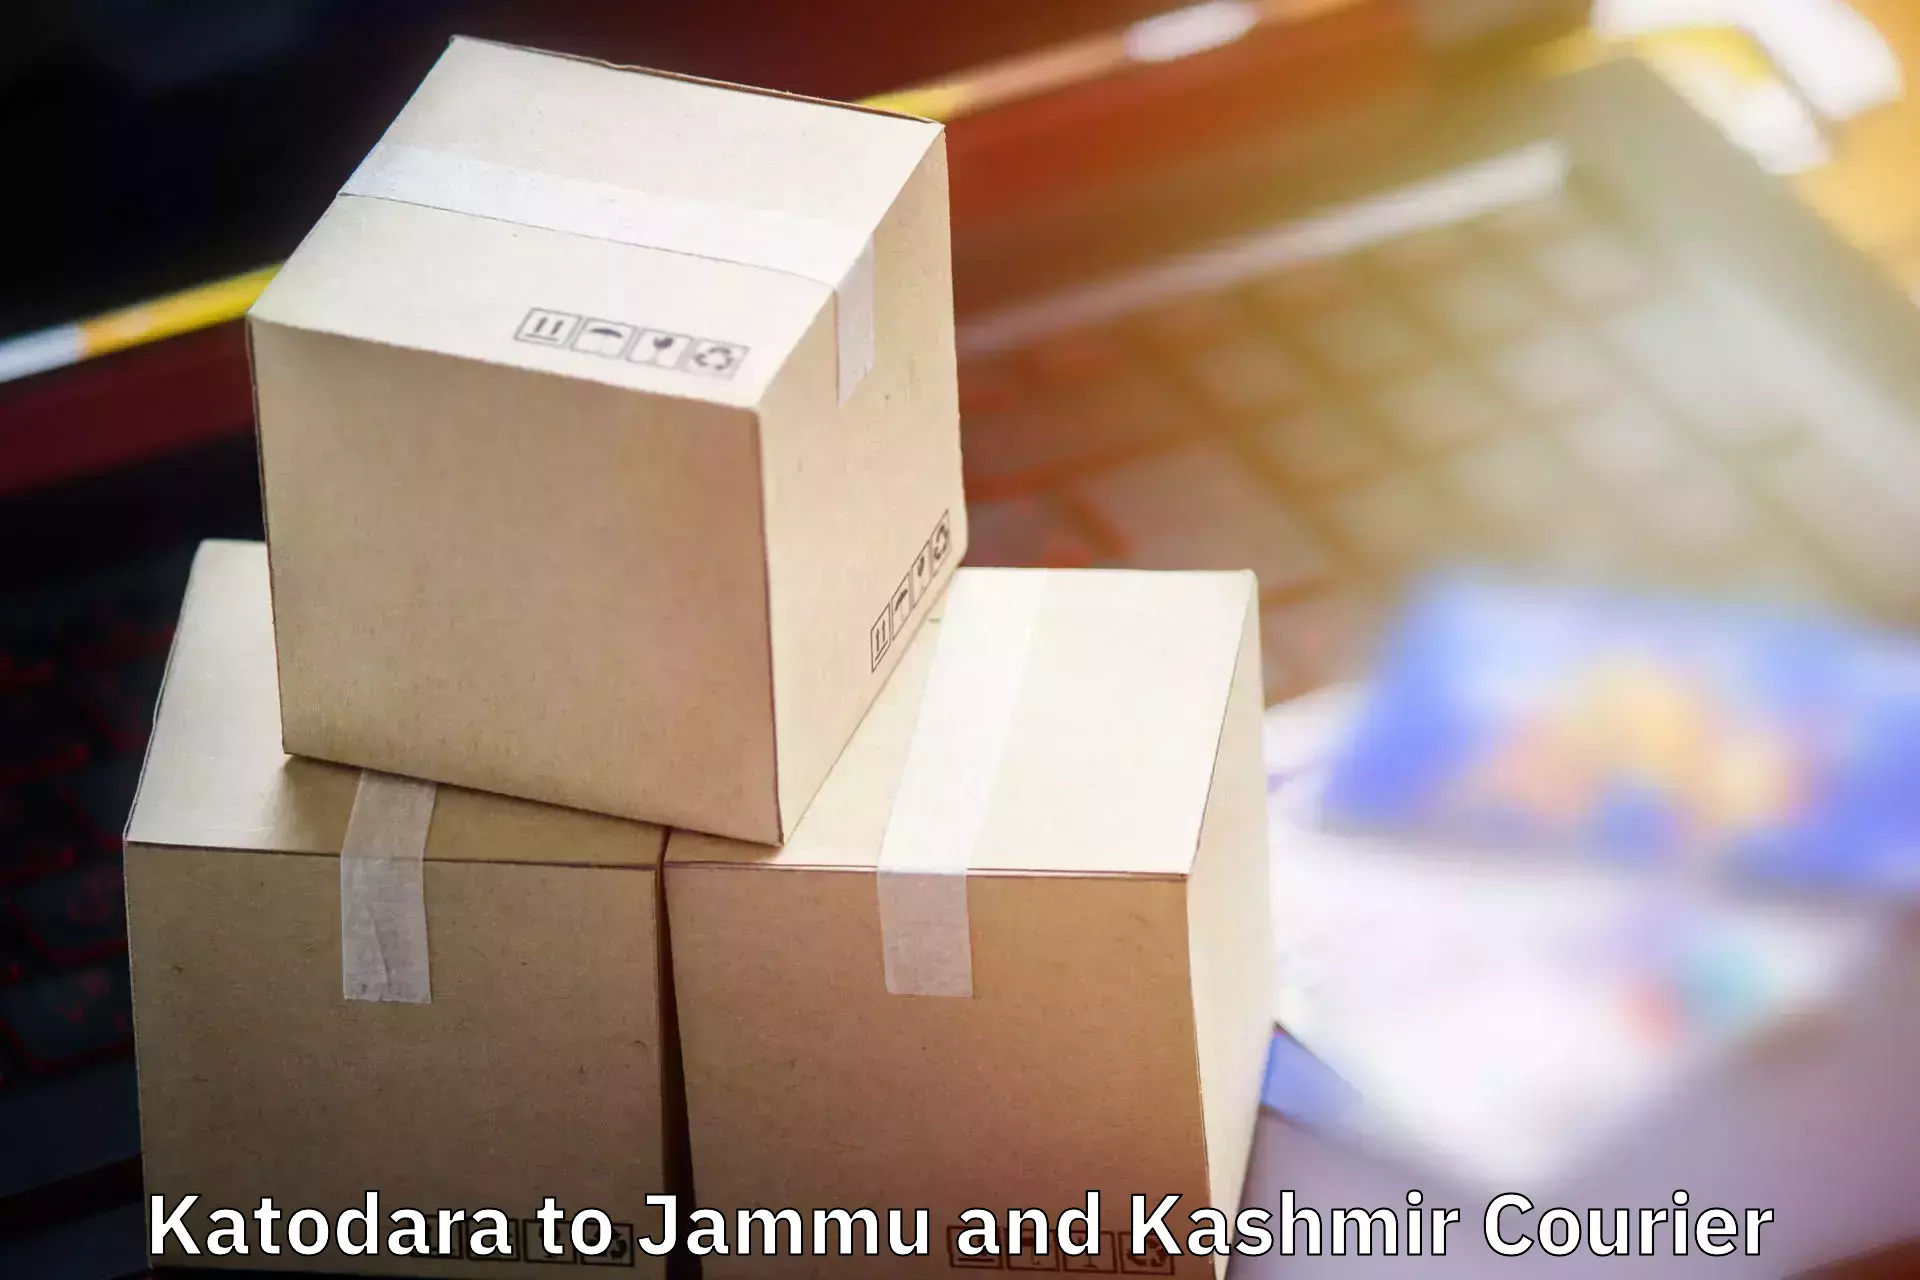 Baggage shipping schedule Katodara to Srinagar Kashmir